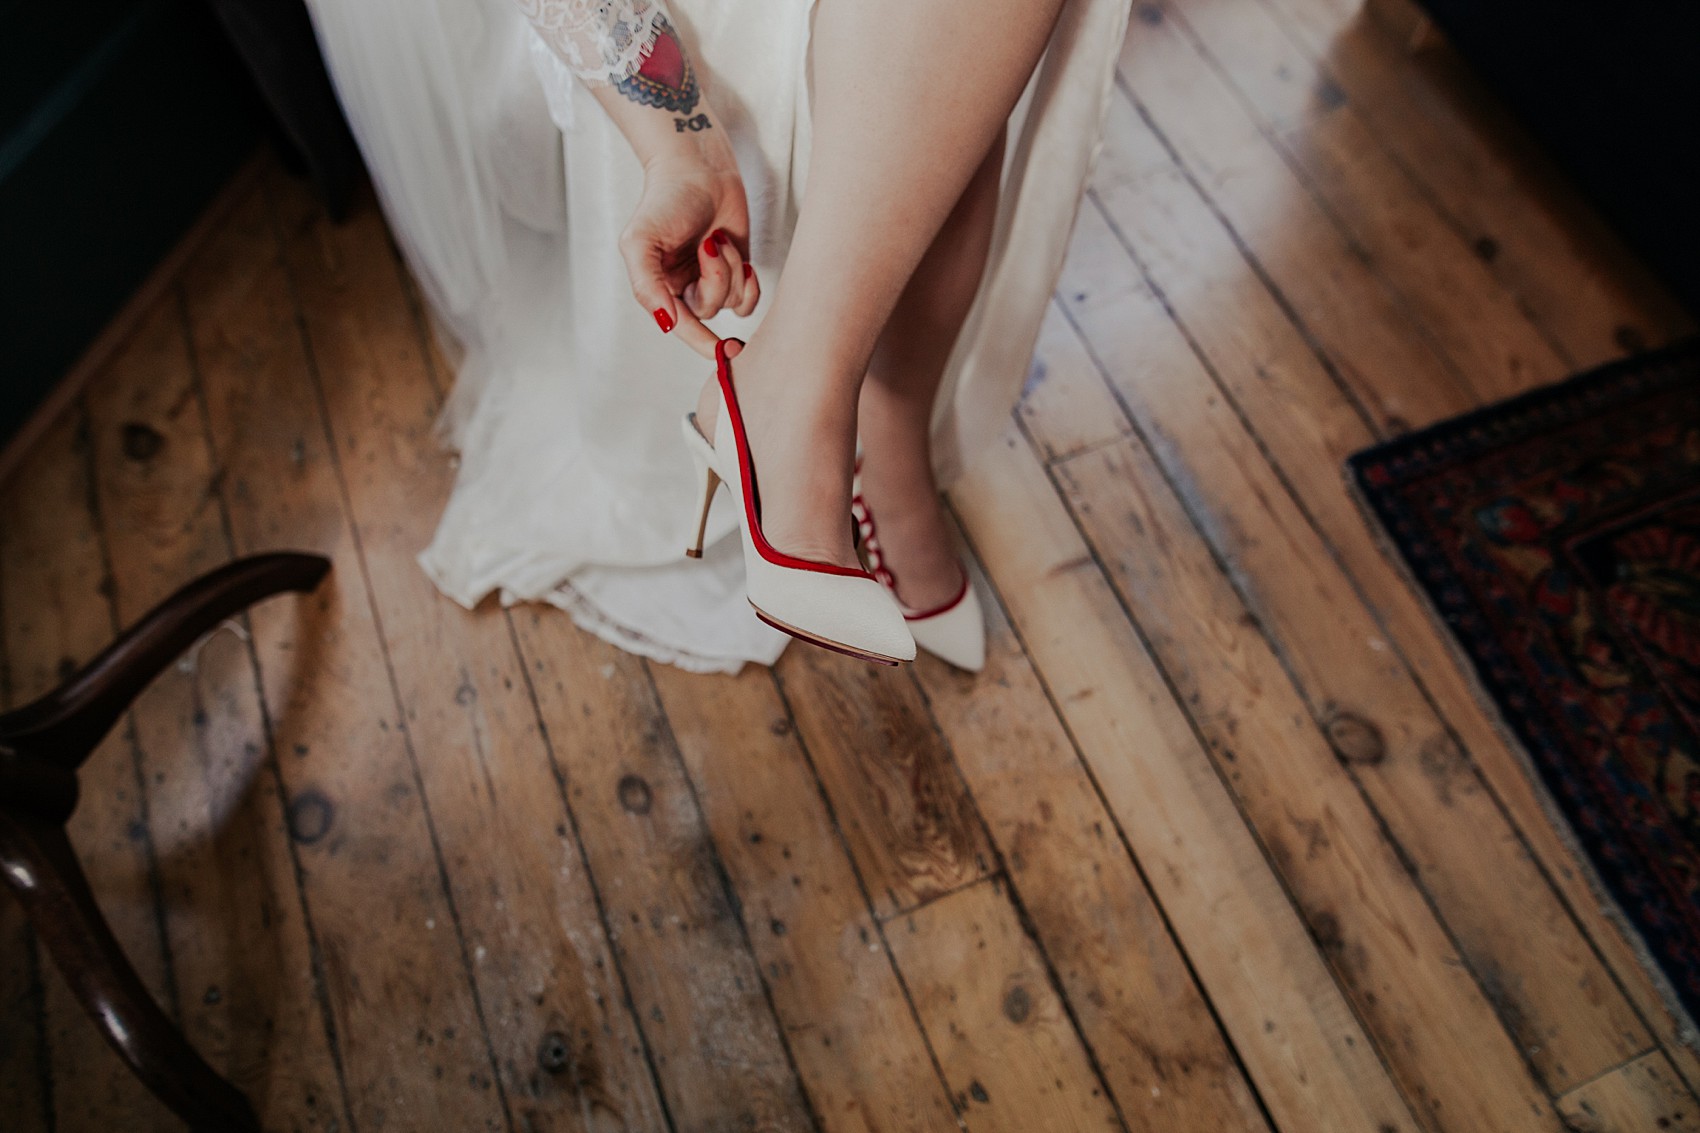 matalan bridesmaid shoes